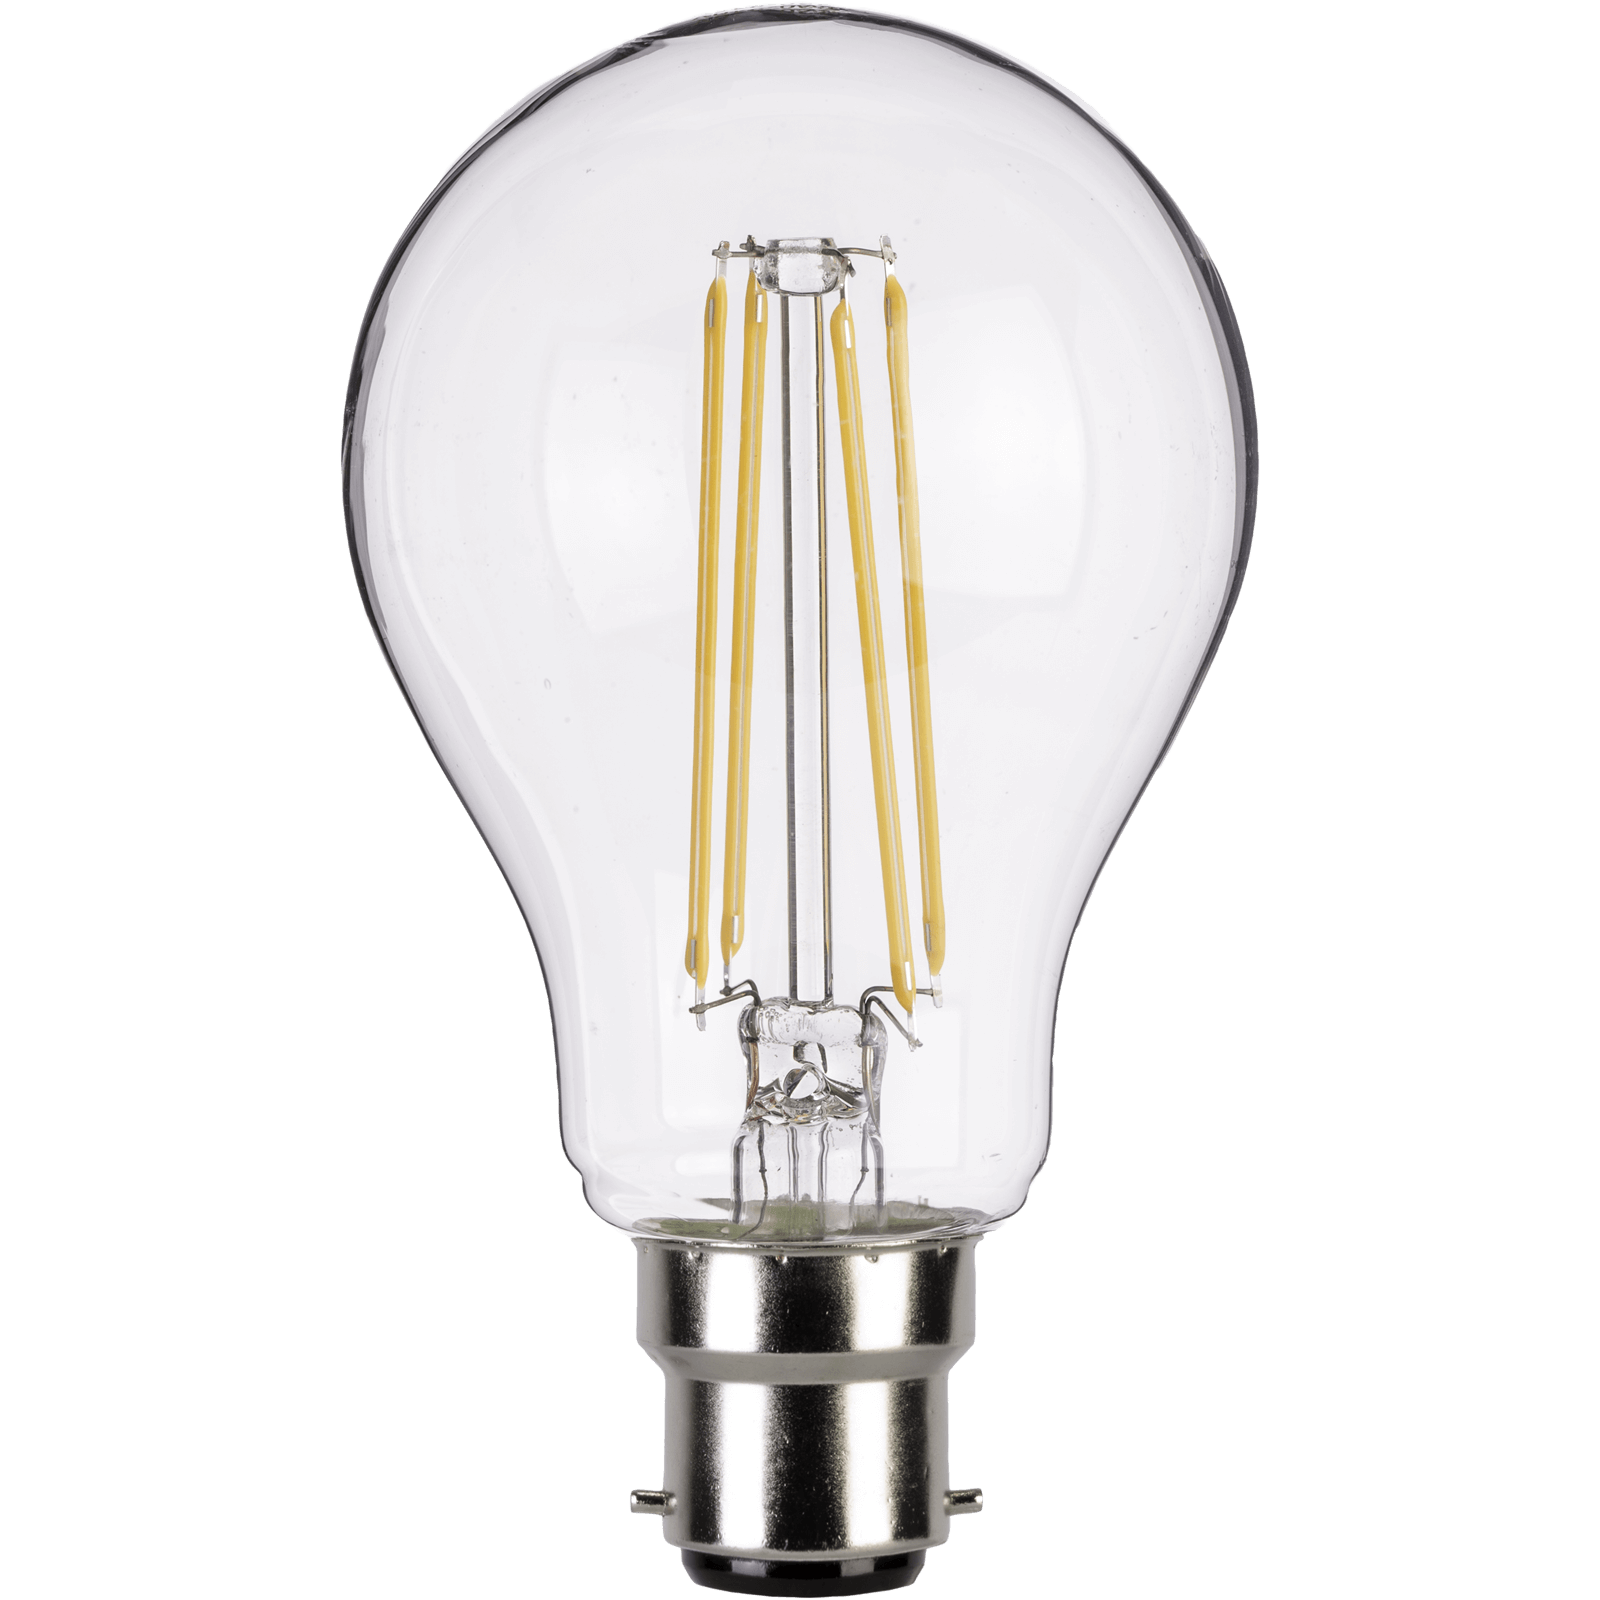 TCP LED Filament Classic BC 6.7W Light Bulb